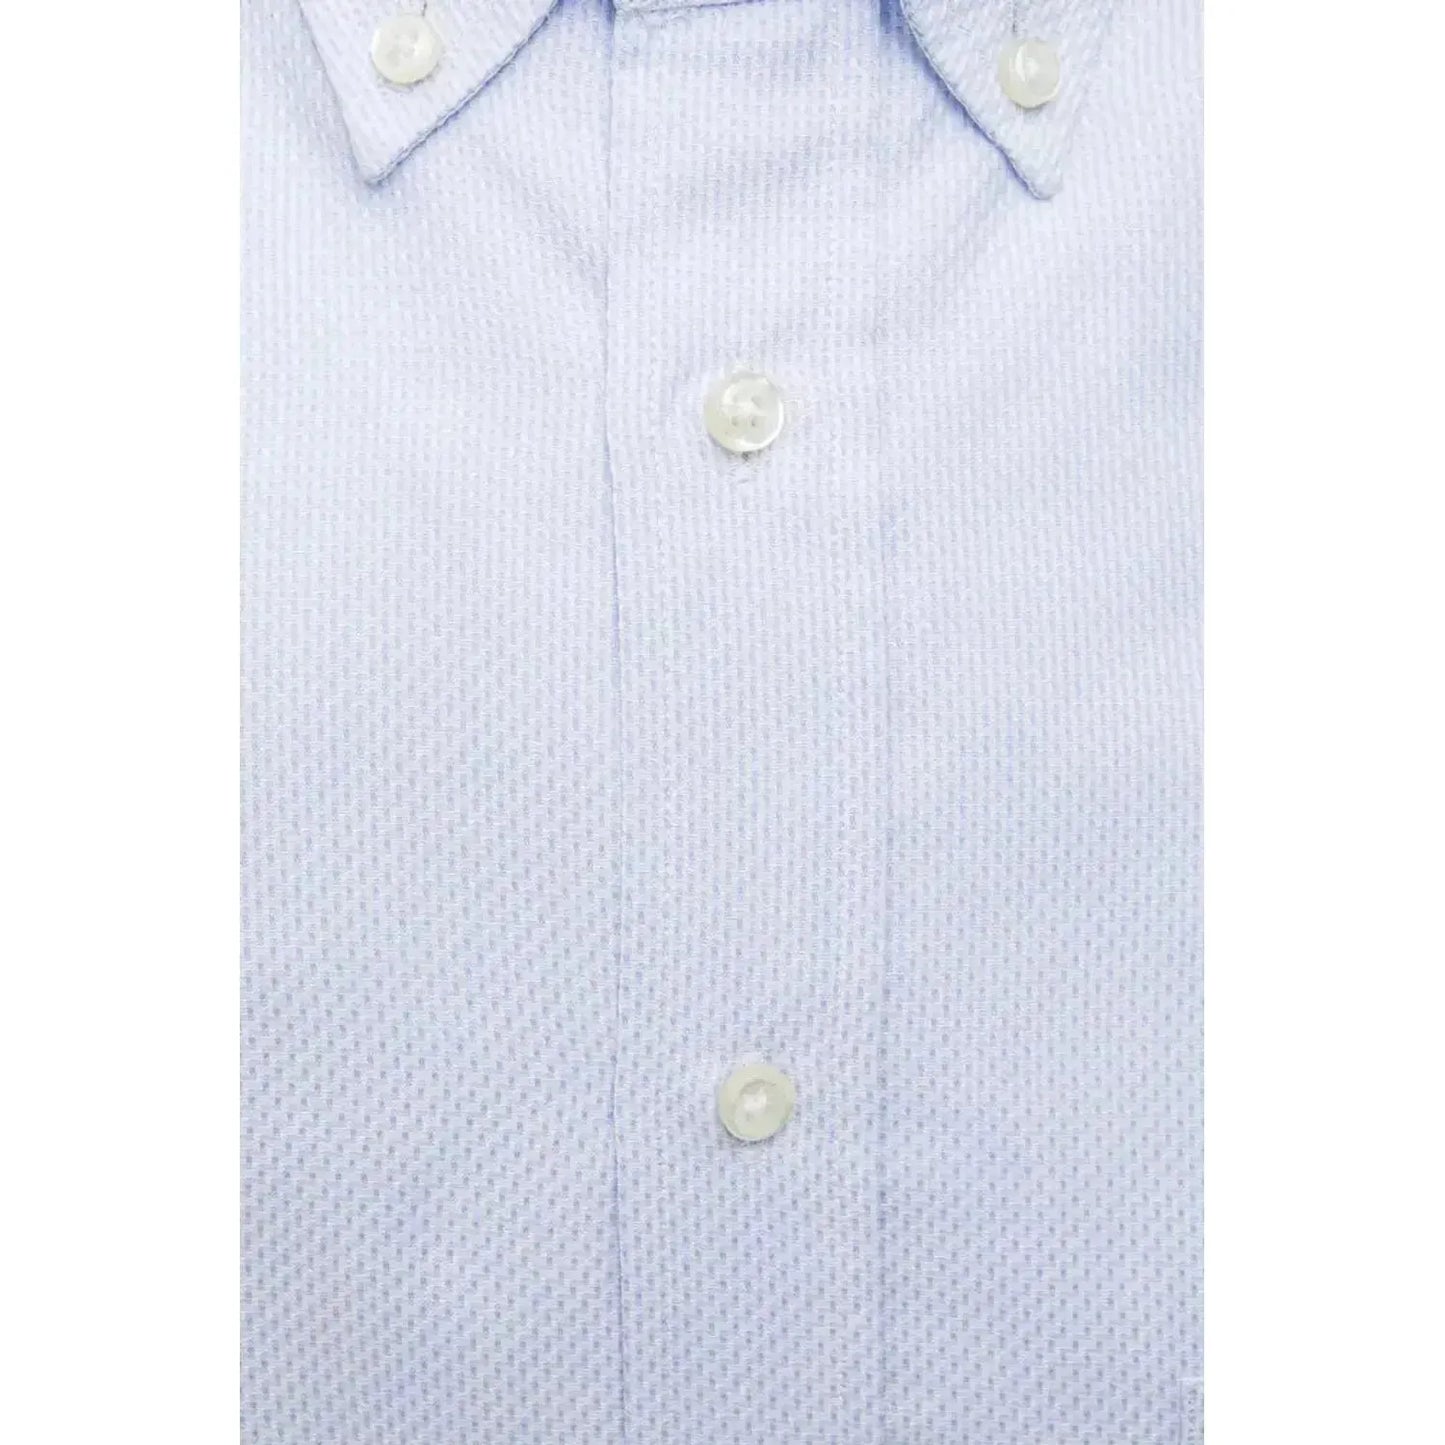 Robert Friedman Elegant Light Blue Cotton Button-Down Shirt light-blue-cotton-shirt-16